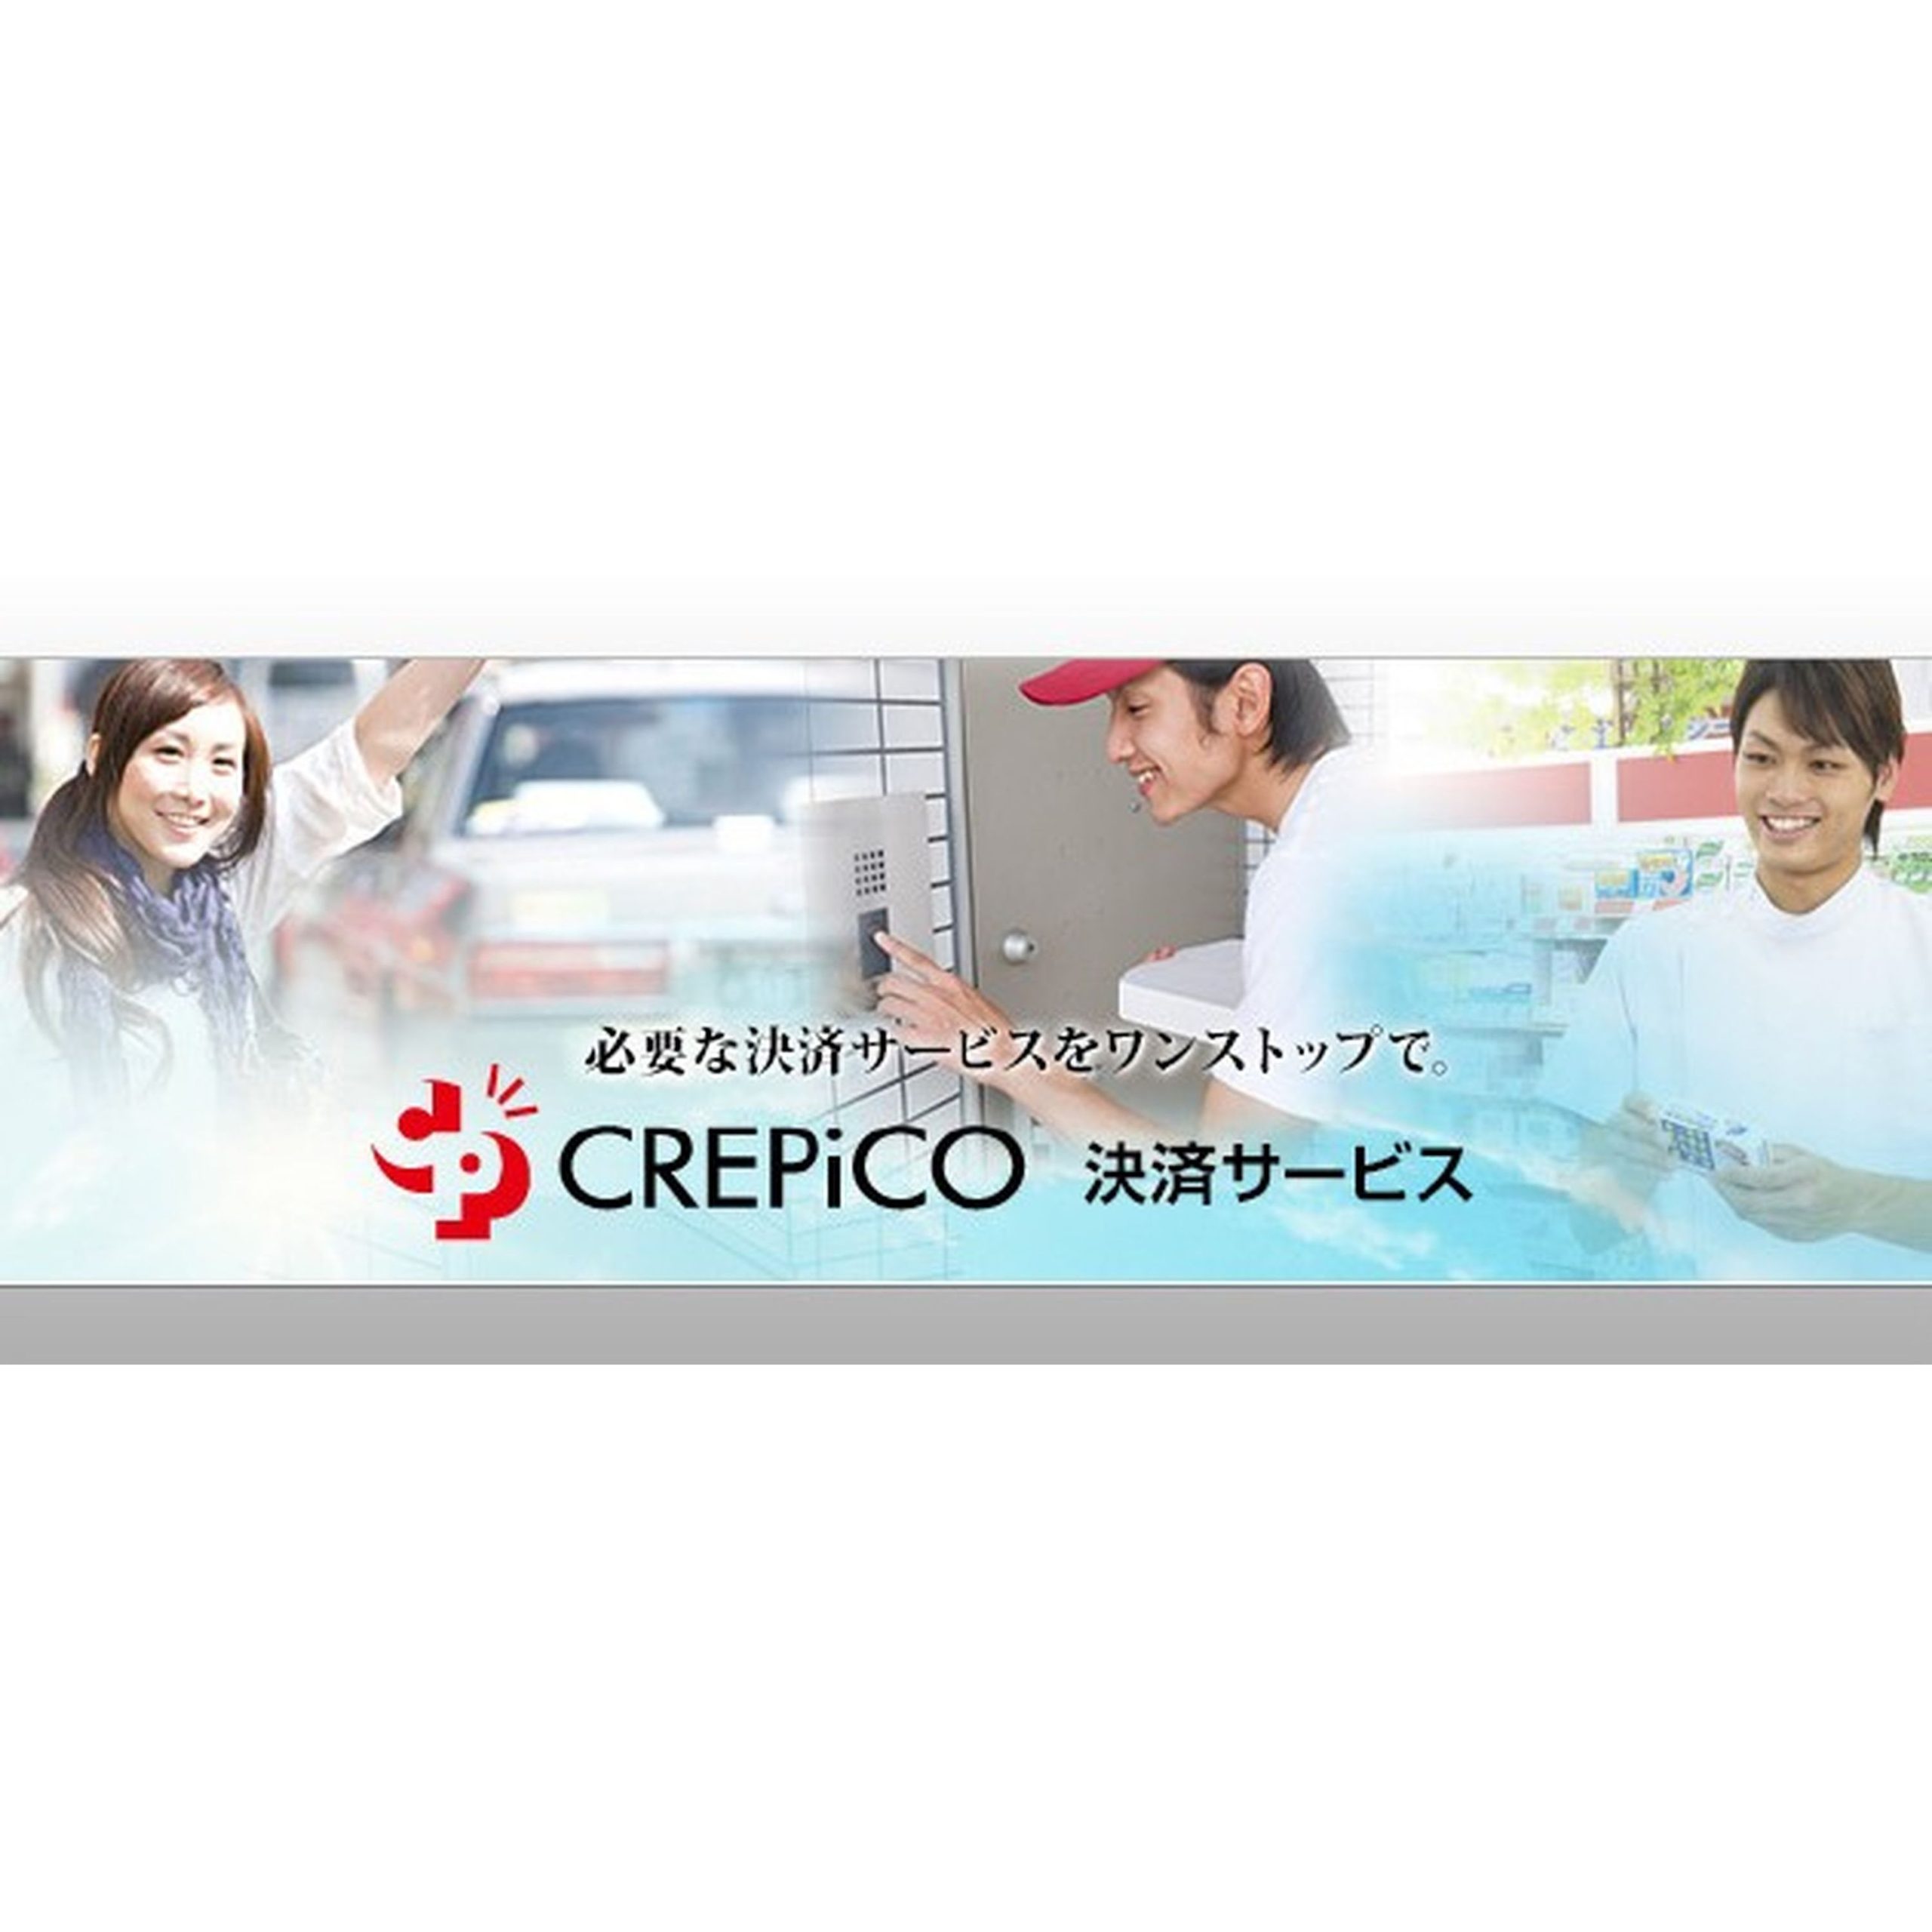 CREPiCO 店舗向け決済ASPサービス